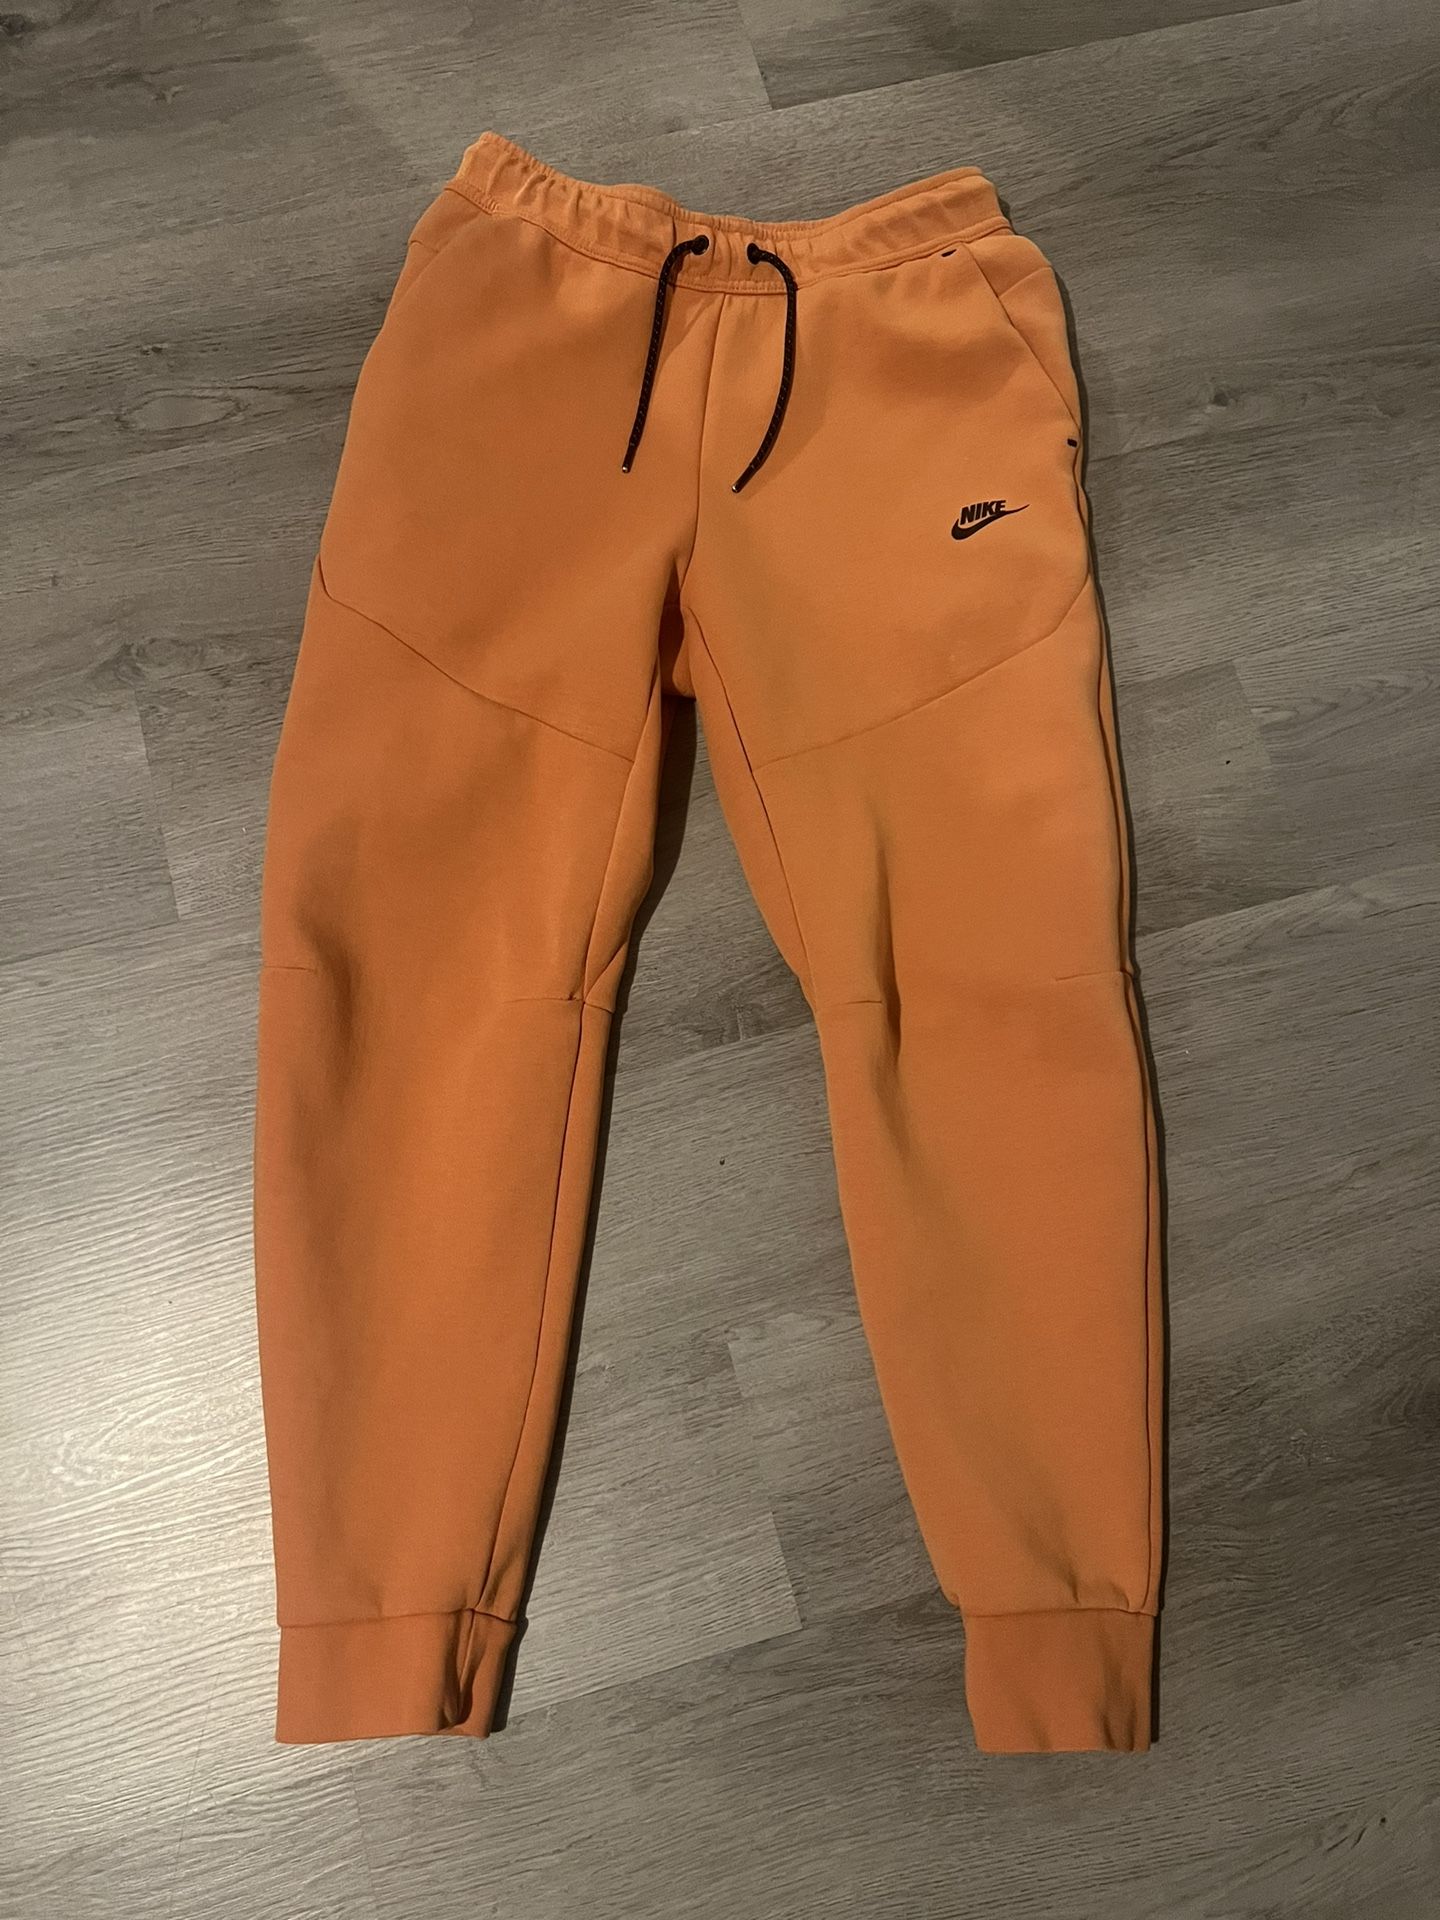 orange nike tech pants 